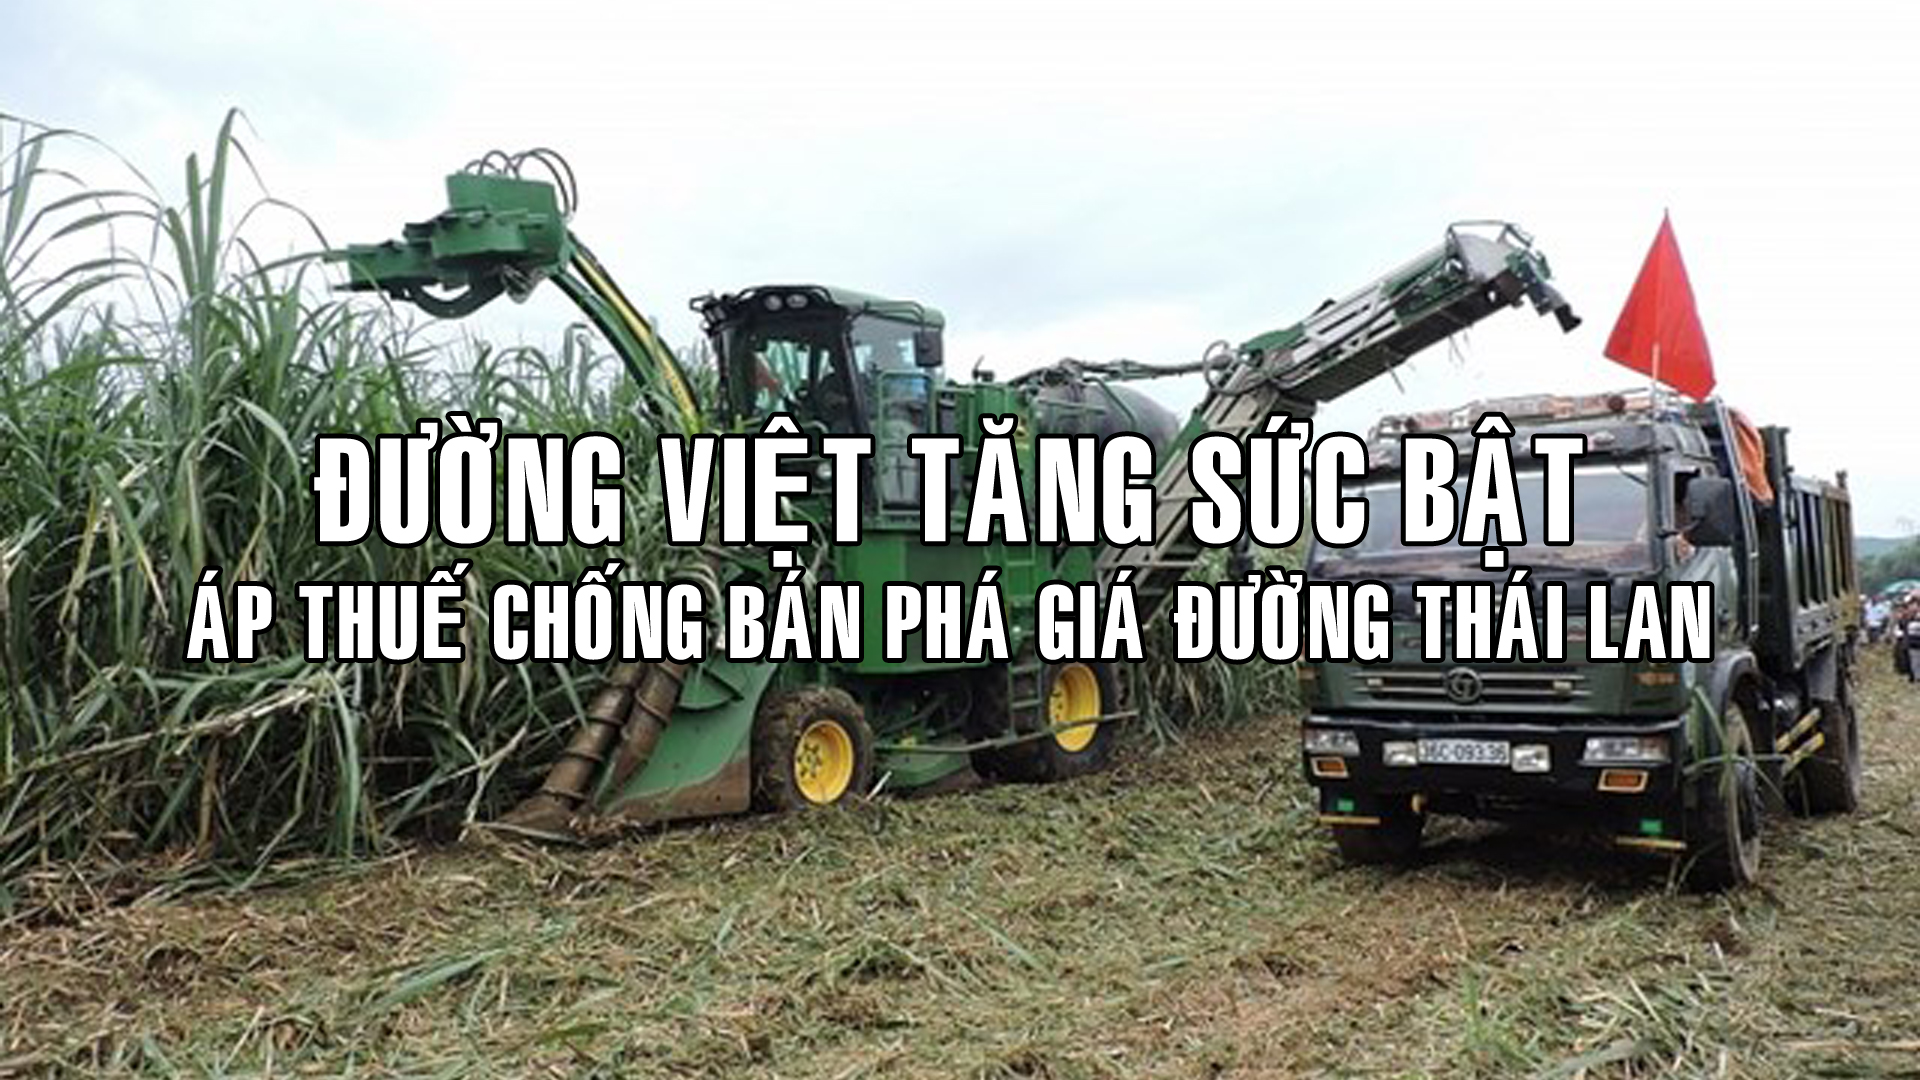 Thái phản đối Việt áp thuế chống bán phá giá đường